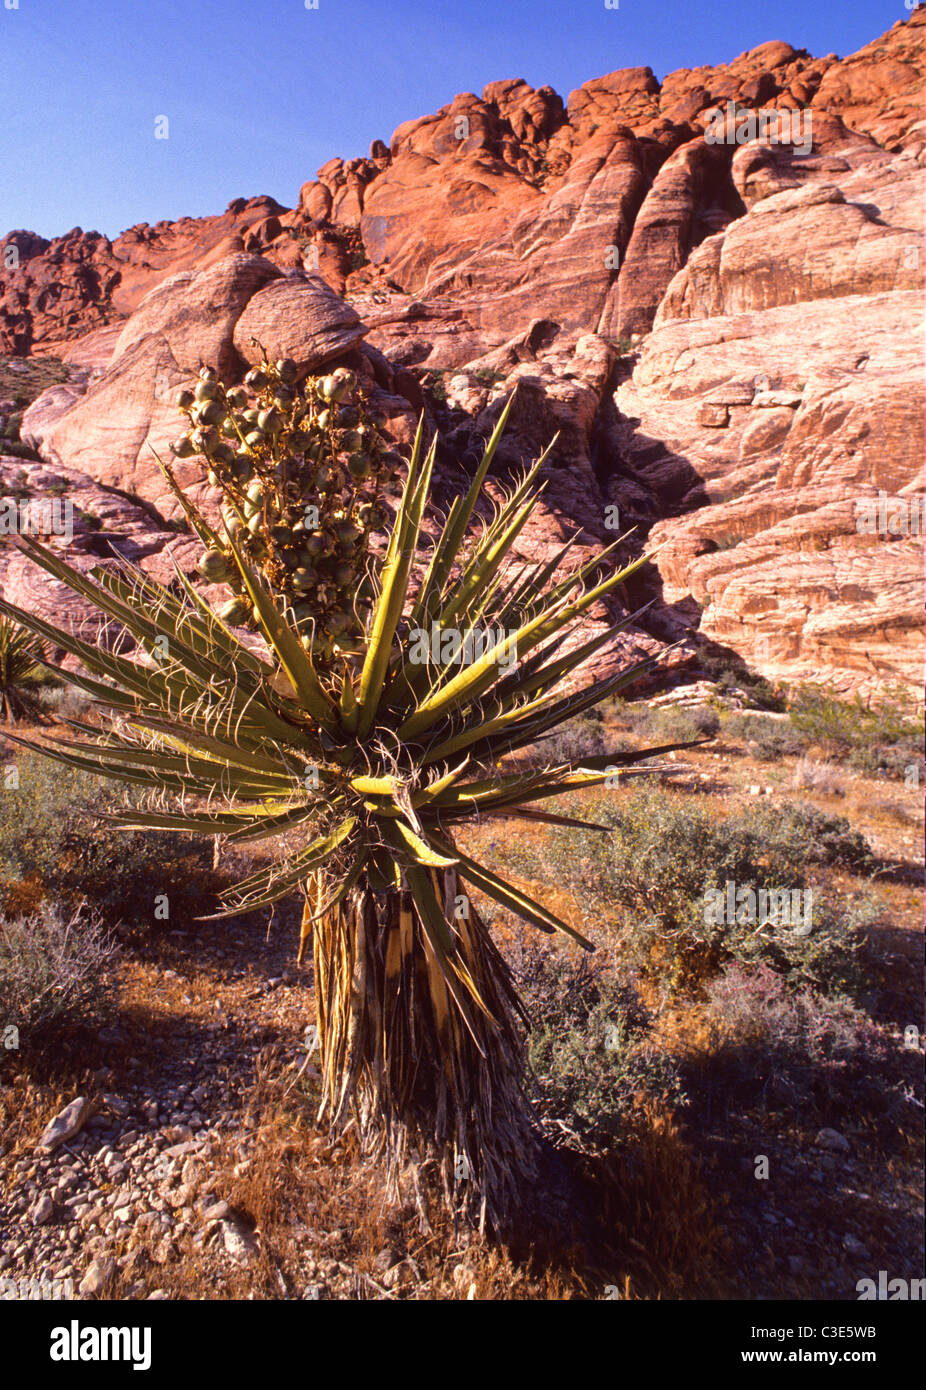 Il Red Rock Canyon National Conservation Area in Nevada riceve 1,2 milioni di visitatori ogni anno. Foto Stock